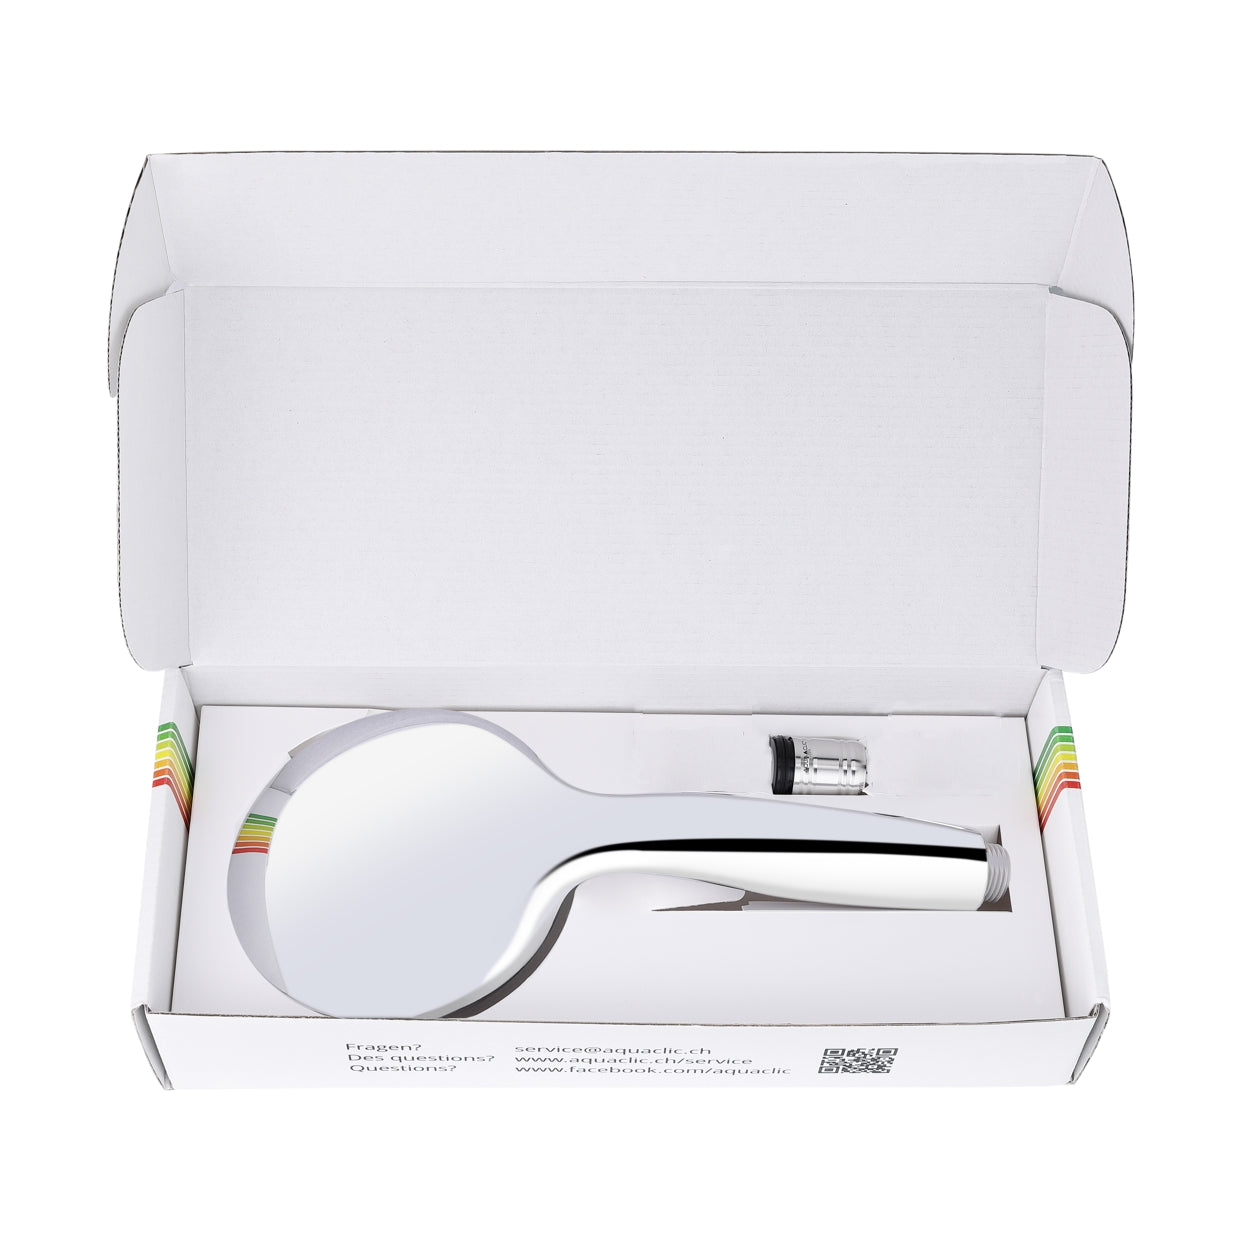 Combi-Box für eine umstellbare Mehr-Strahl-Brause und 1 AquaClic-Wassersparer